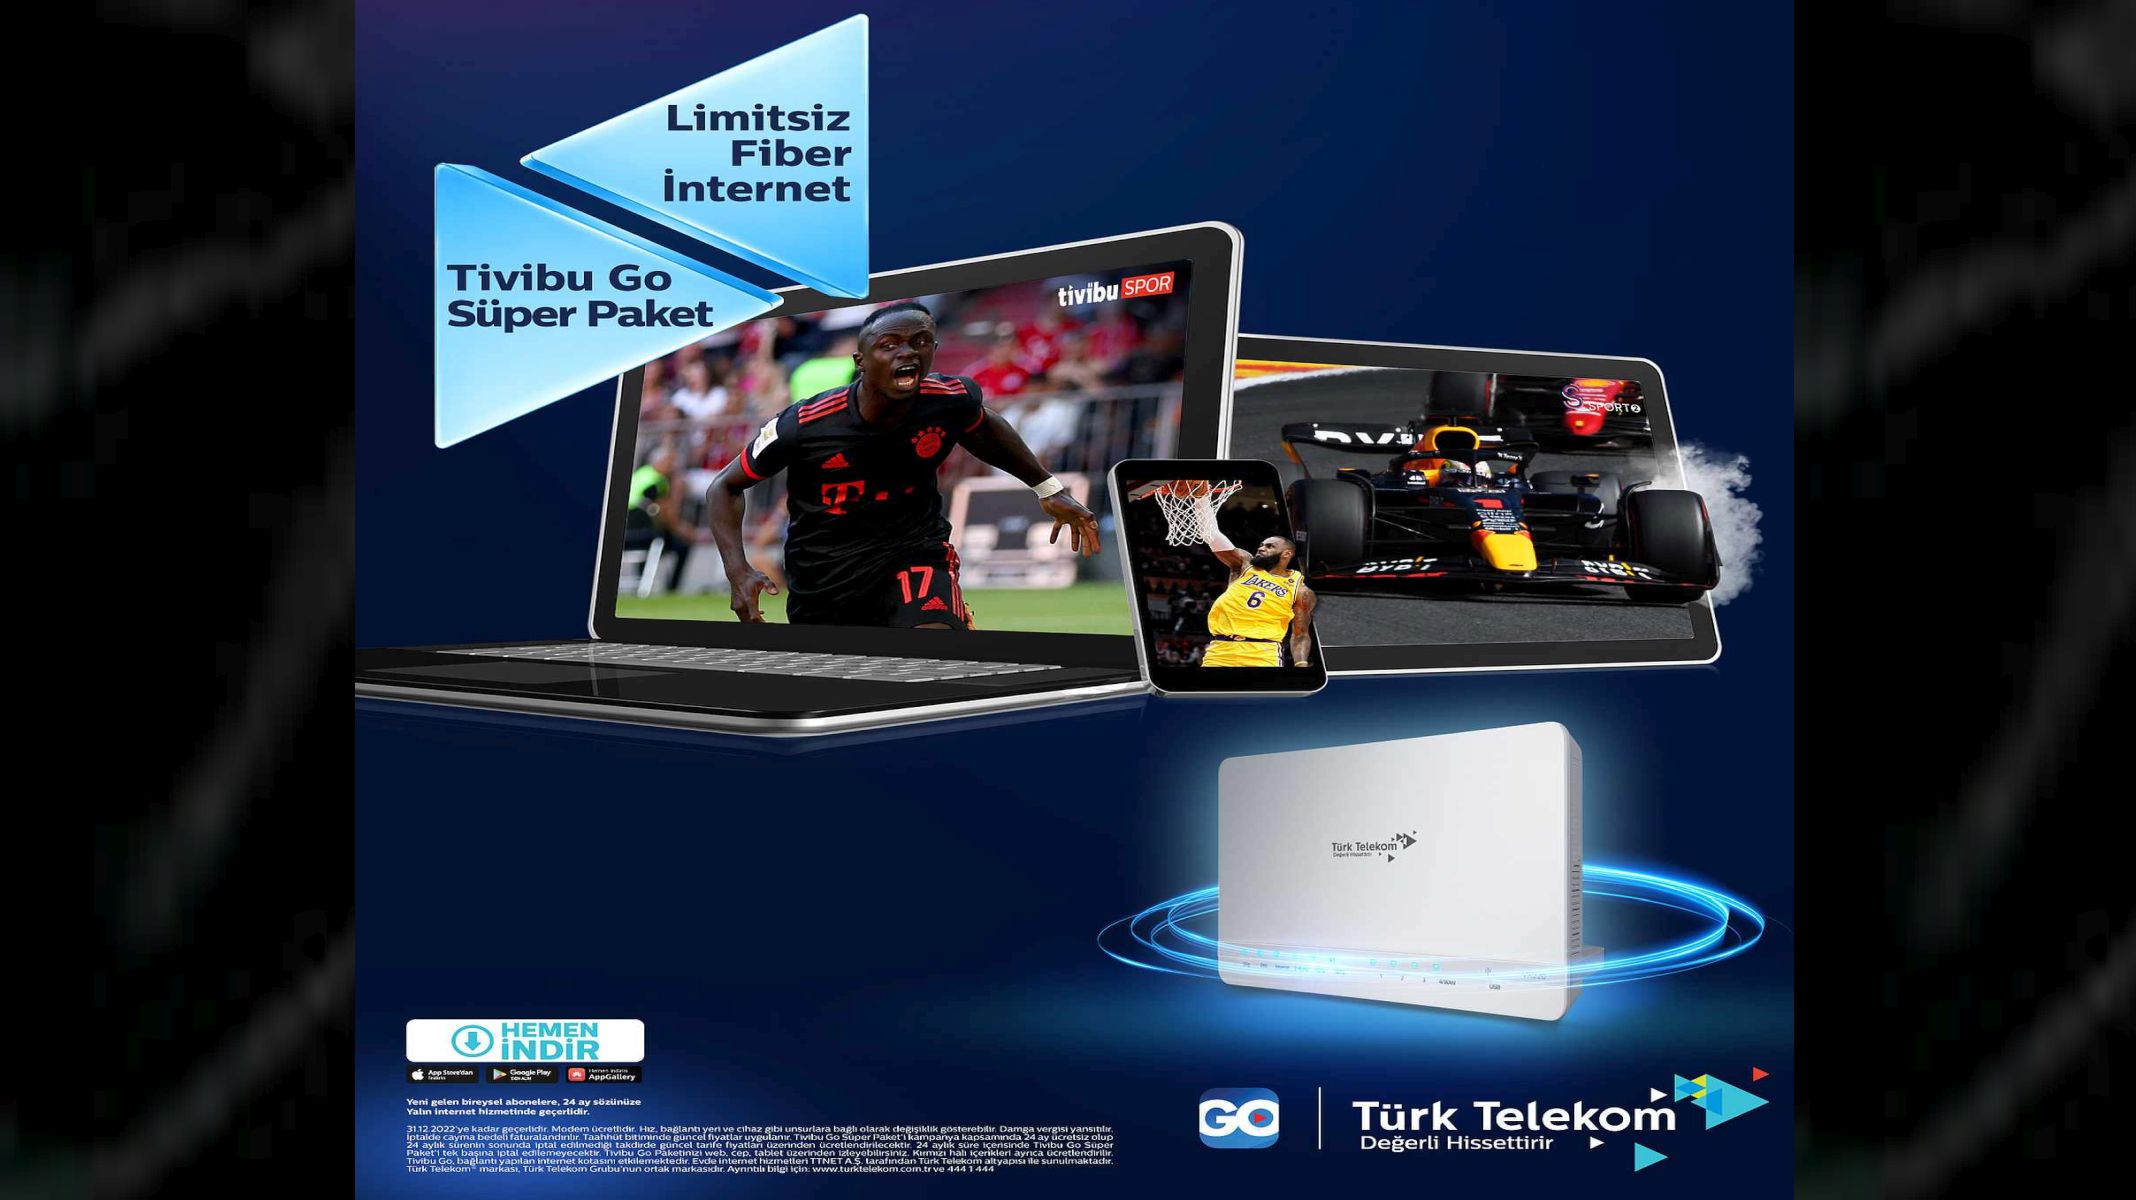 Türk Telekom’dan Sporseverlere Sınırsız Fiber İnternet ve TVU Go kampanyası